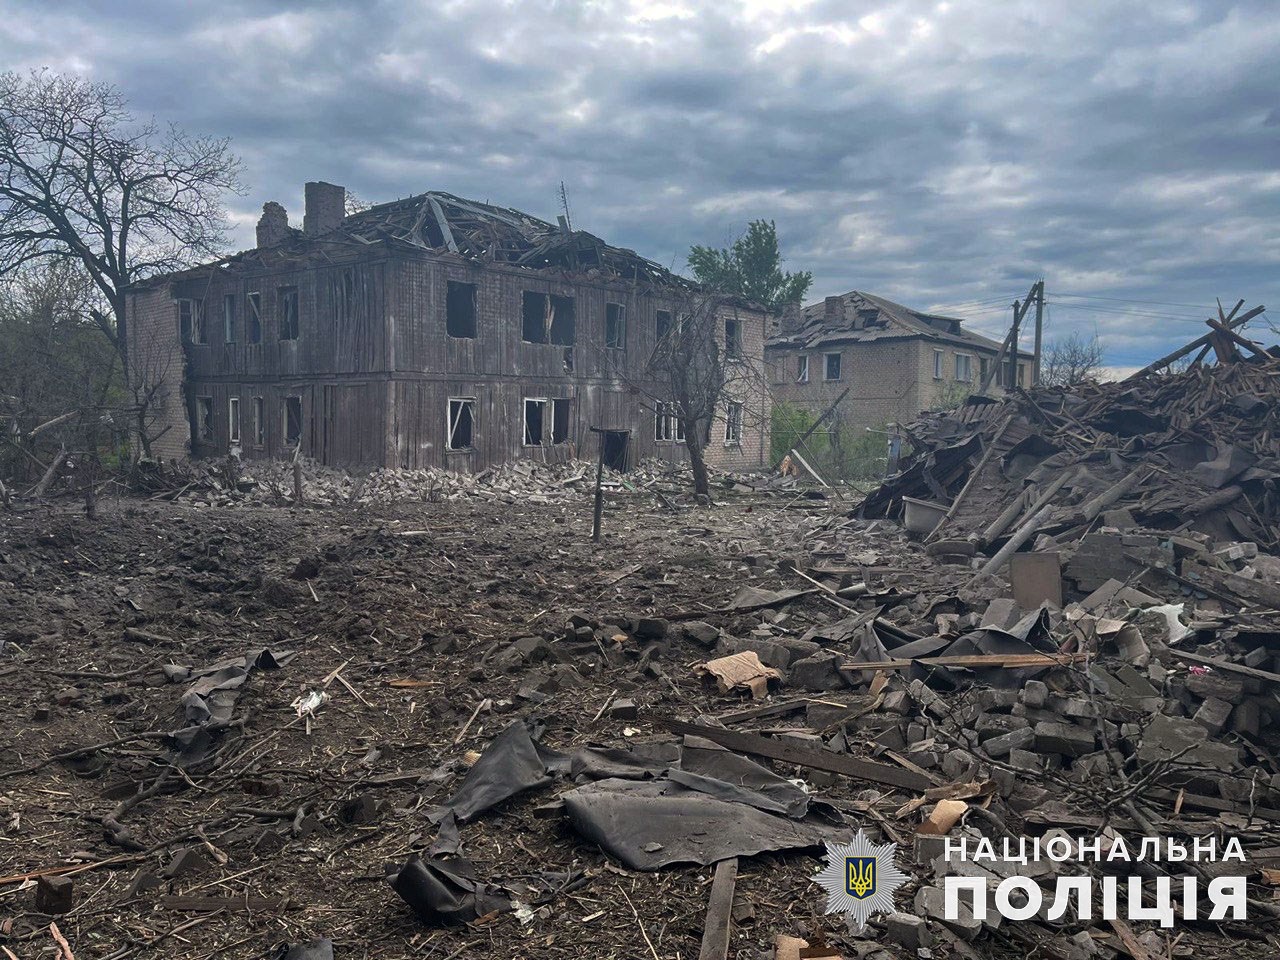 13 раненых и одна погибшая за день: последствия российских обстрелов в Донецкой области (ФОТО, СВОДКА) 4